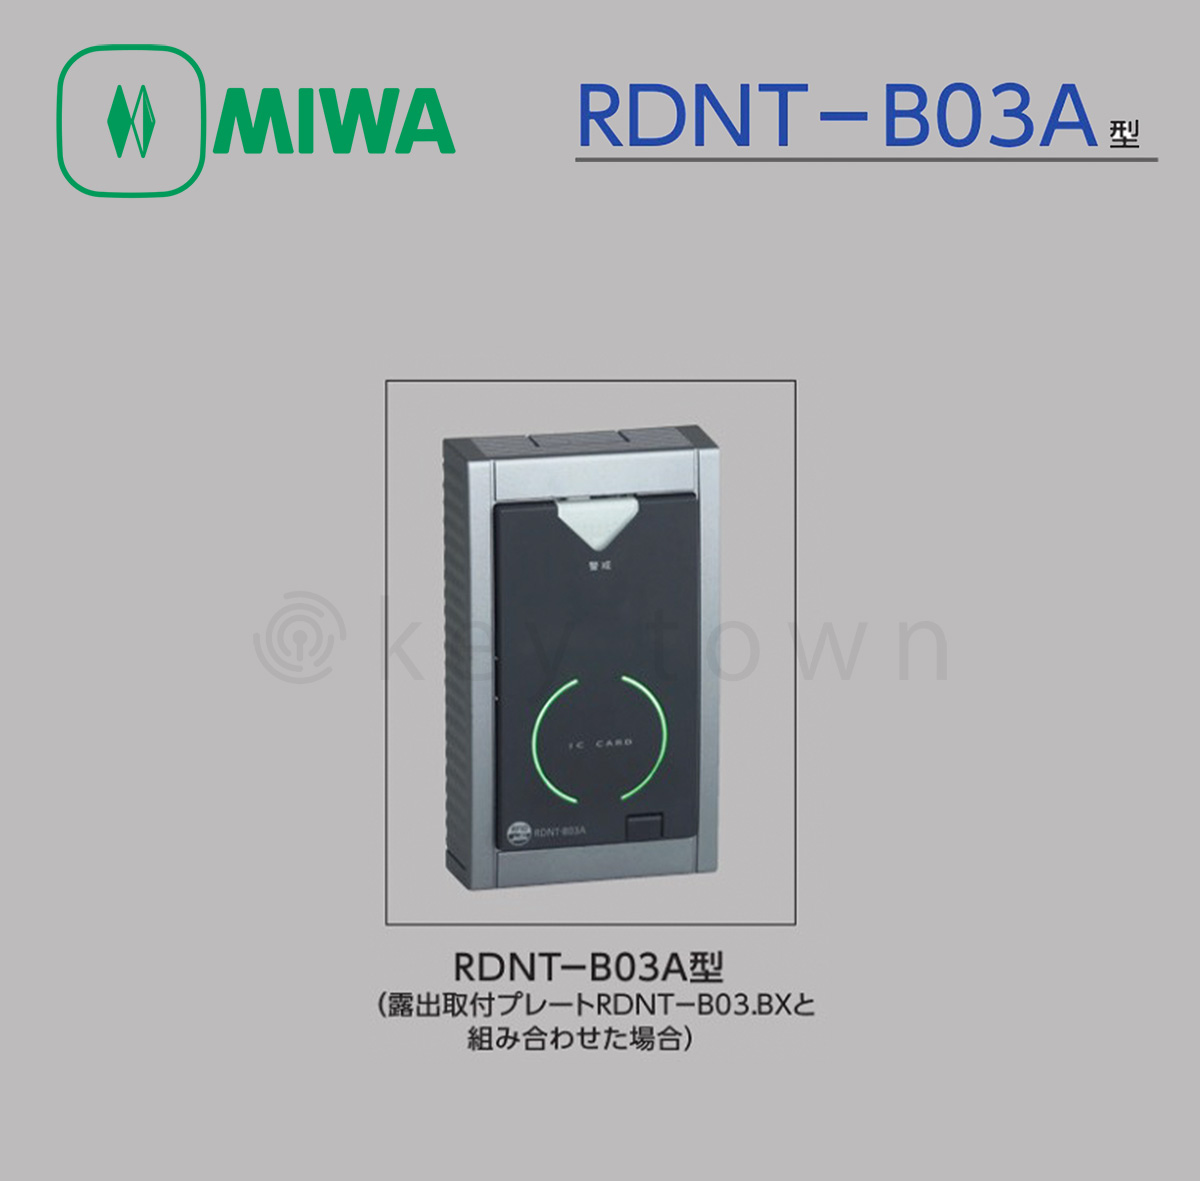 MIWA 【美和ロック】非接触ICカードリーダ [MIWA-RDNT-B03A] RDNT-B03A型 MIU-03,CMCU-801対応リーダ